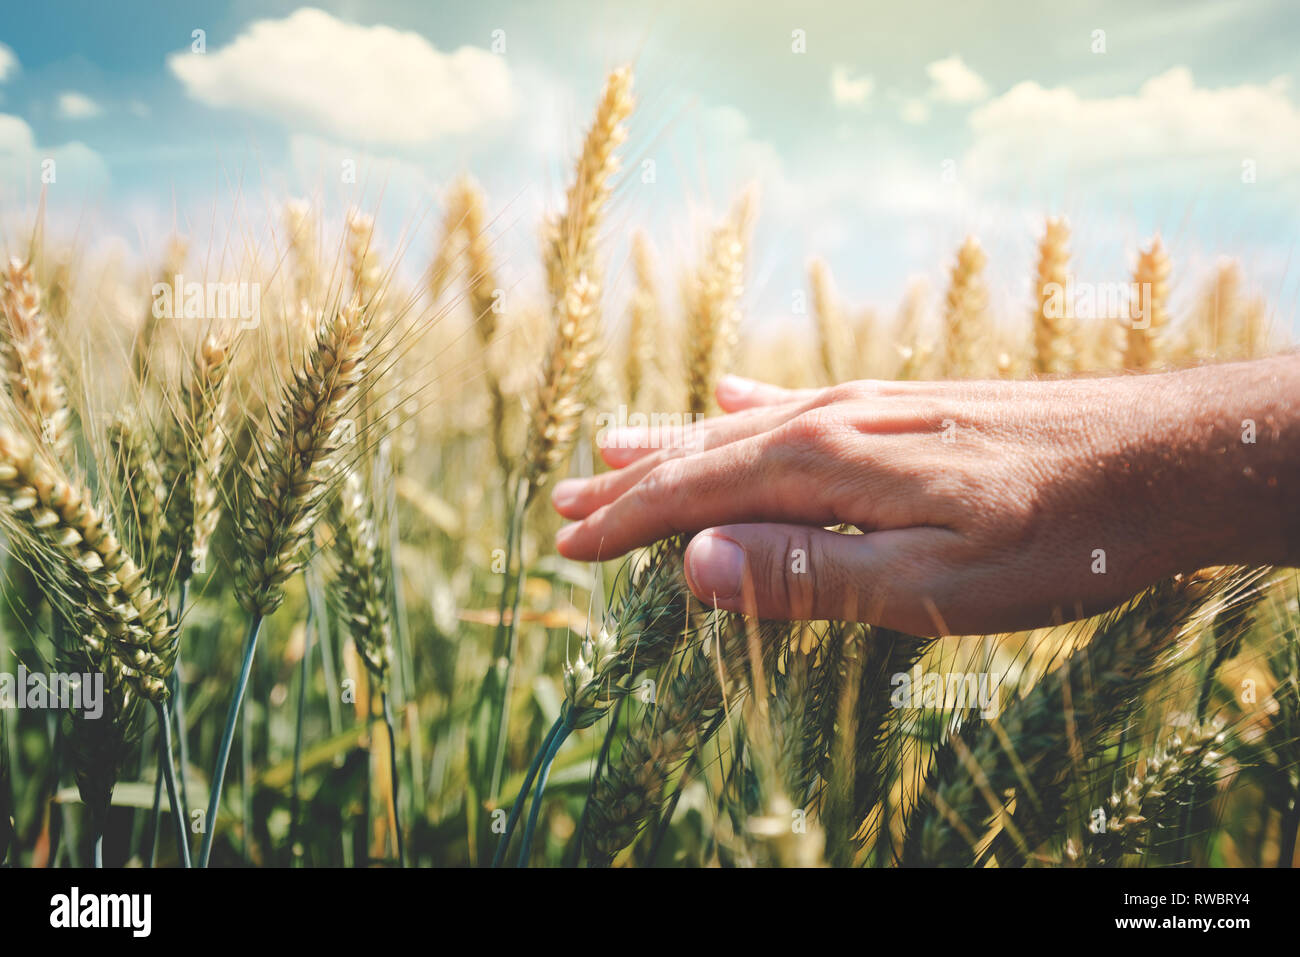 Concept de protection des cultures avec l'agriculteur récolte de blé vert toucher les oreilles en champ cultivé, selective focus Banque D'Images